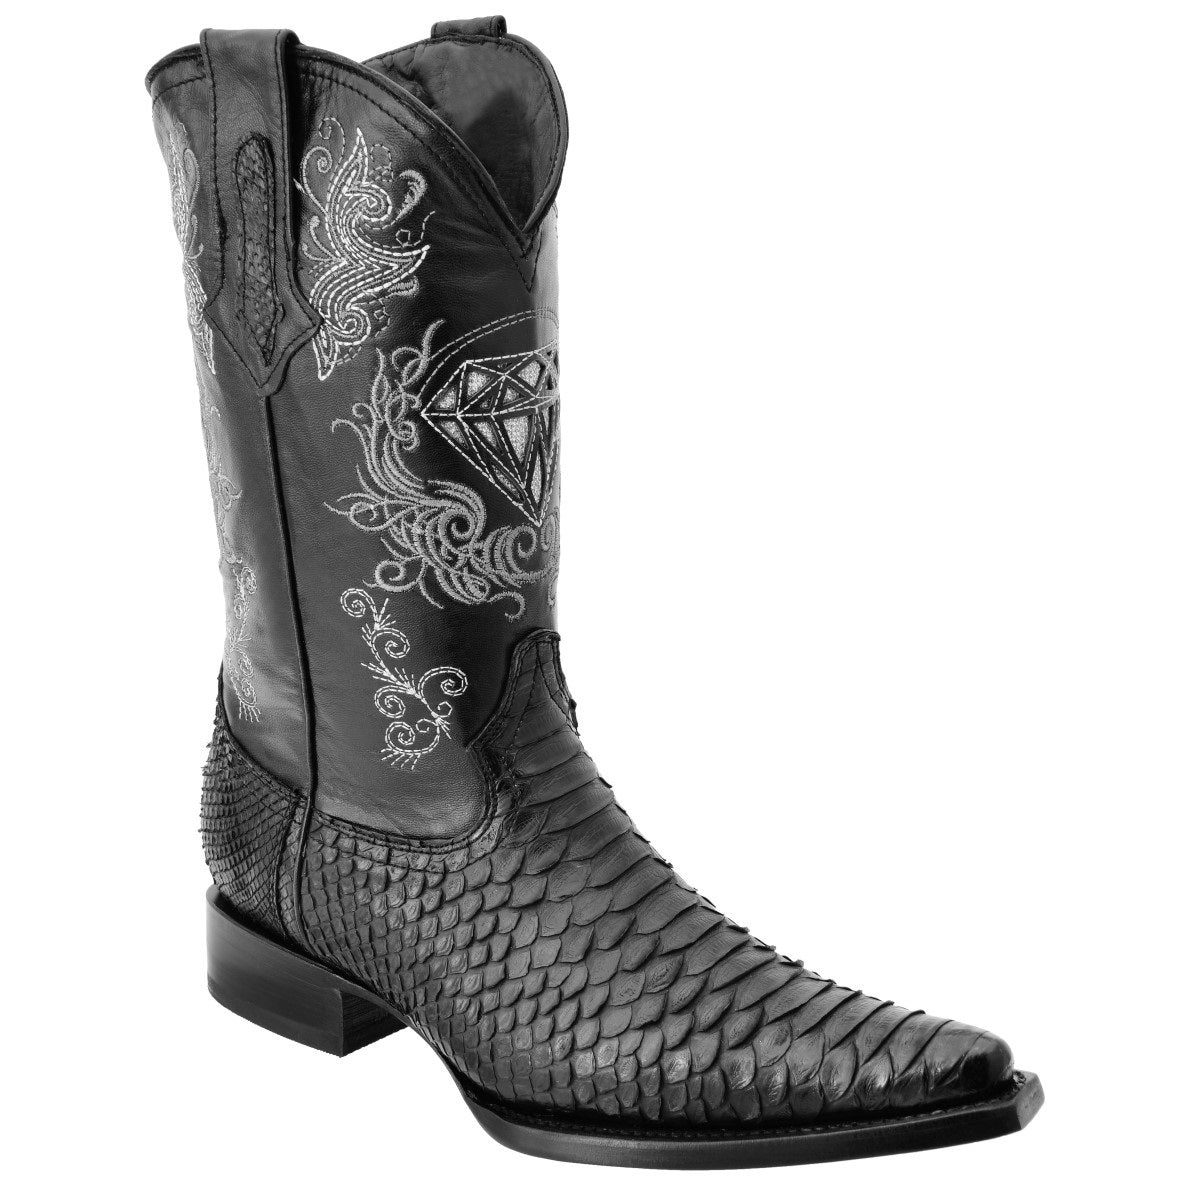 Botas Vaqueras TM-WD0100 - Western Boots